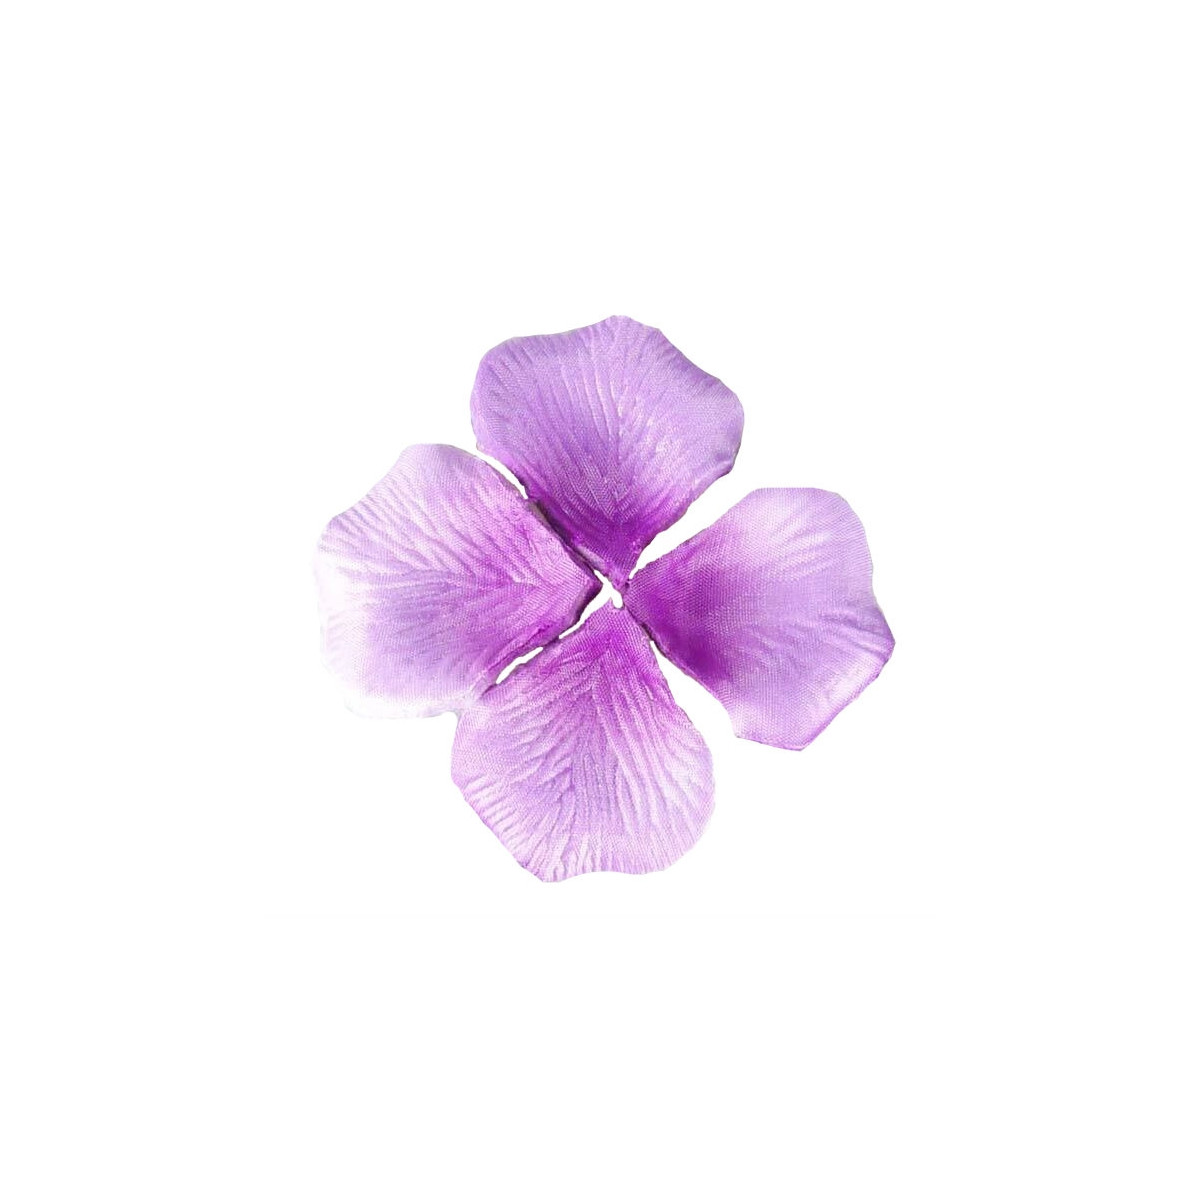 Petale de fleur mariage decoration pas cher lilas